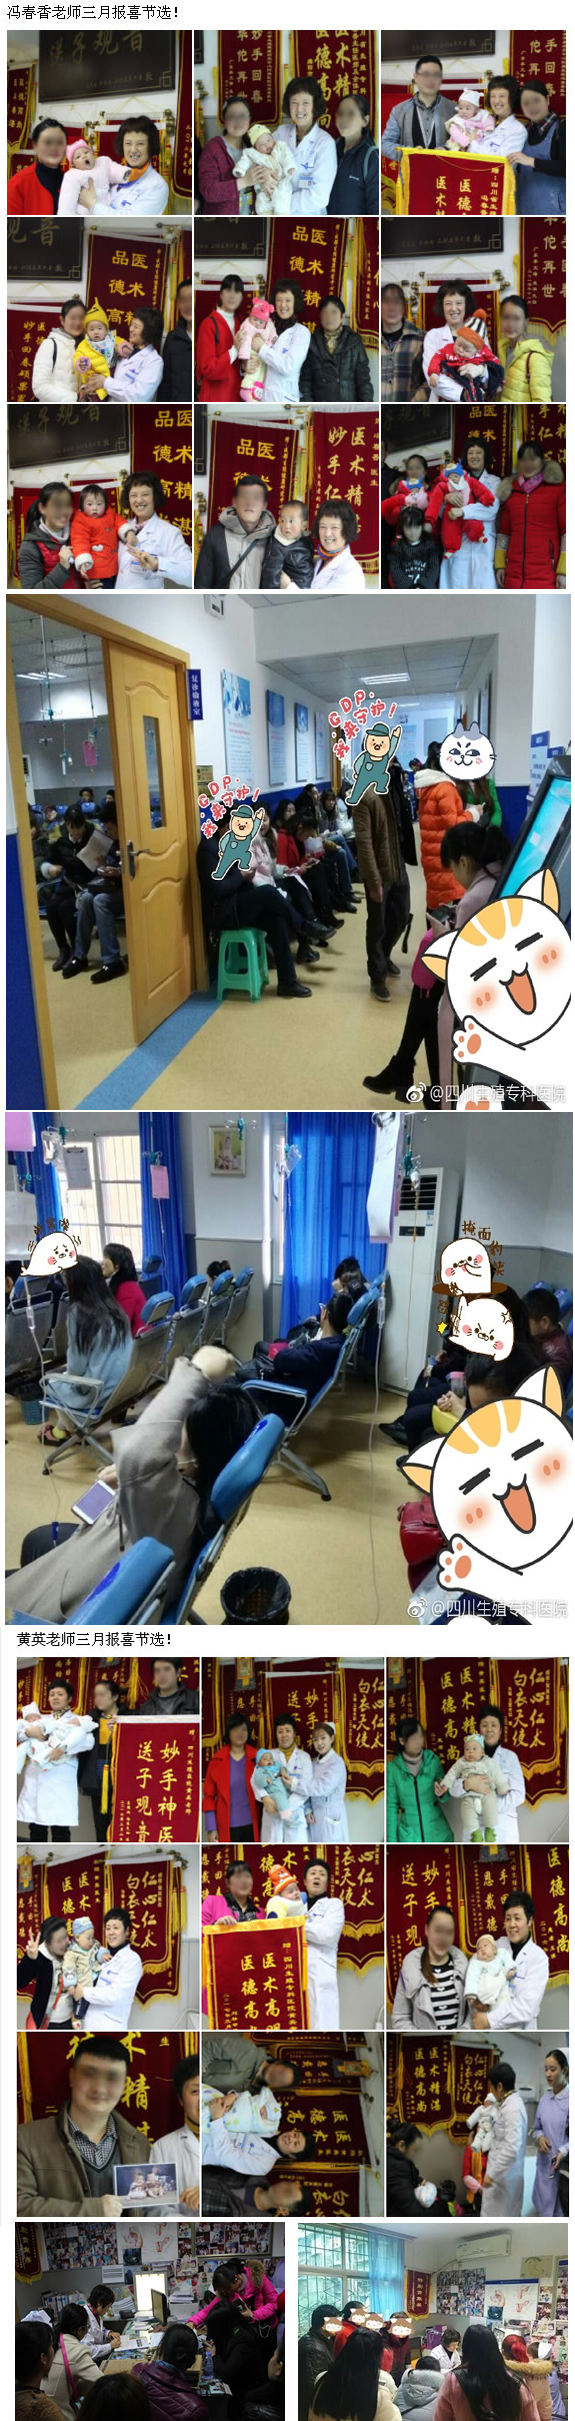  四川省生殖健康研究中心附属生殖专科医院：今天，向青春致敬